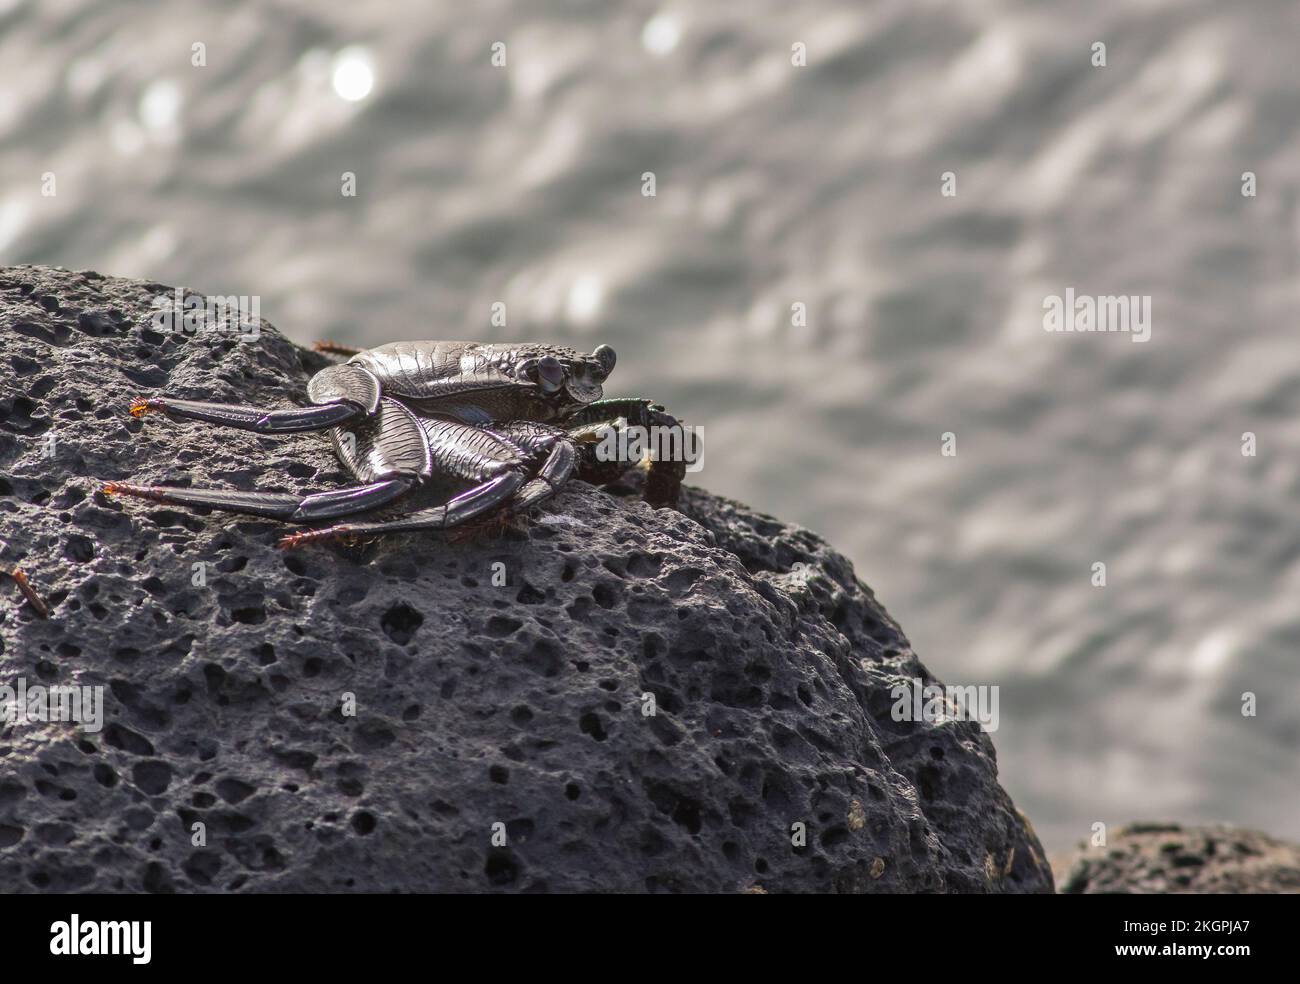 Red Rock Crab (Grapsus adscensionis) sur la roche Banque D'Images